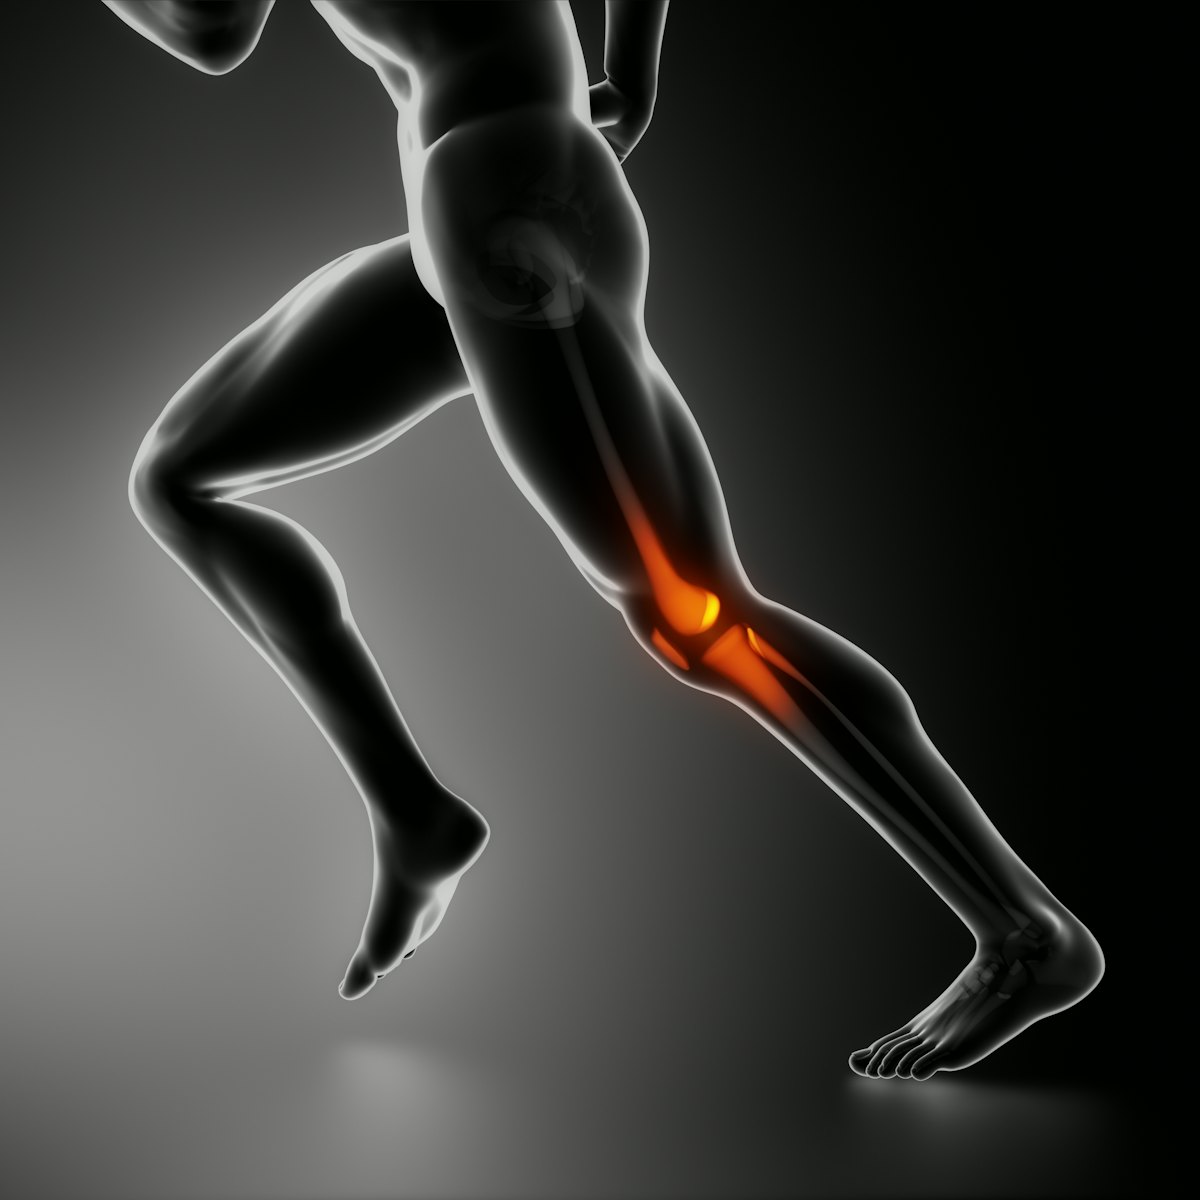 Риск развития остеоартрита коленного сустава может зависеть от мышечной массы